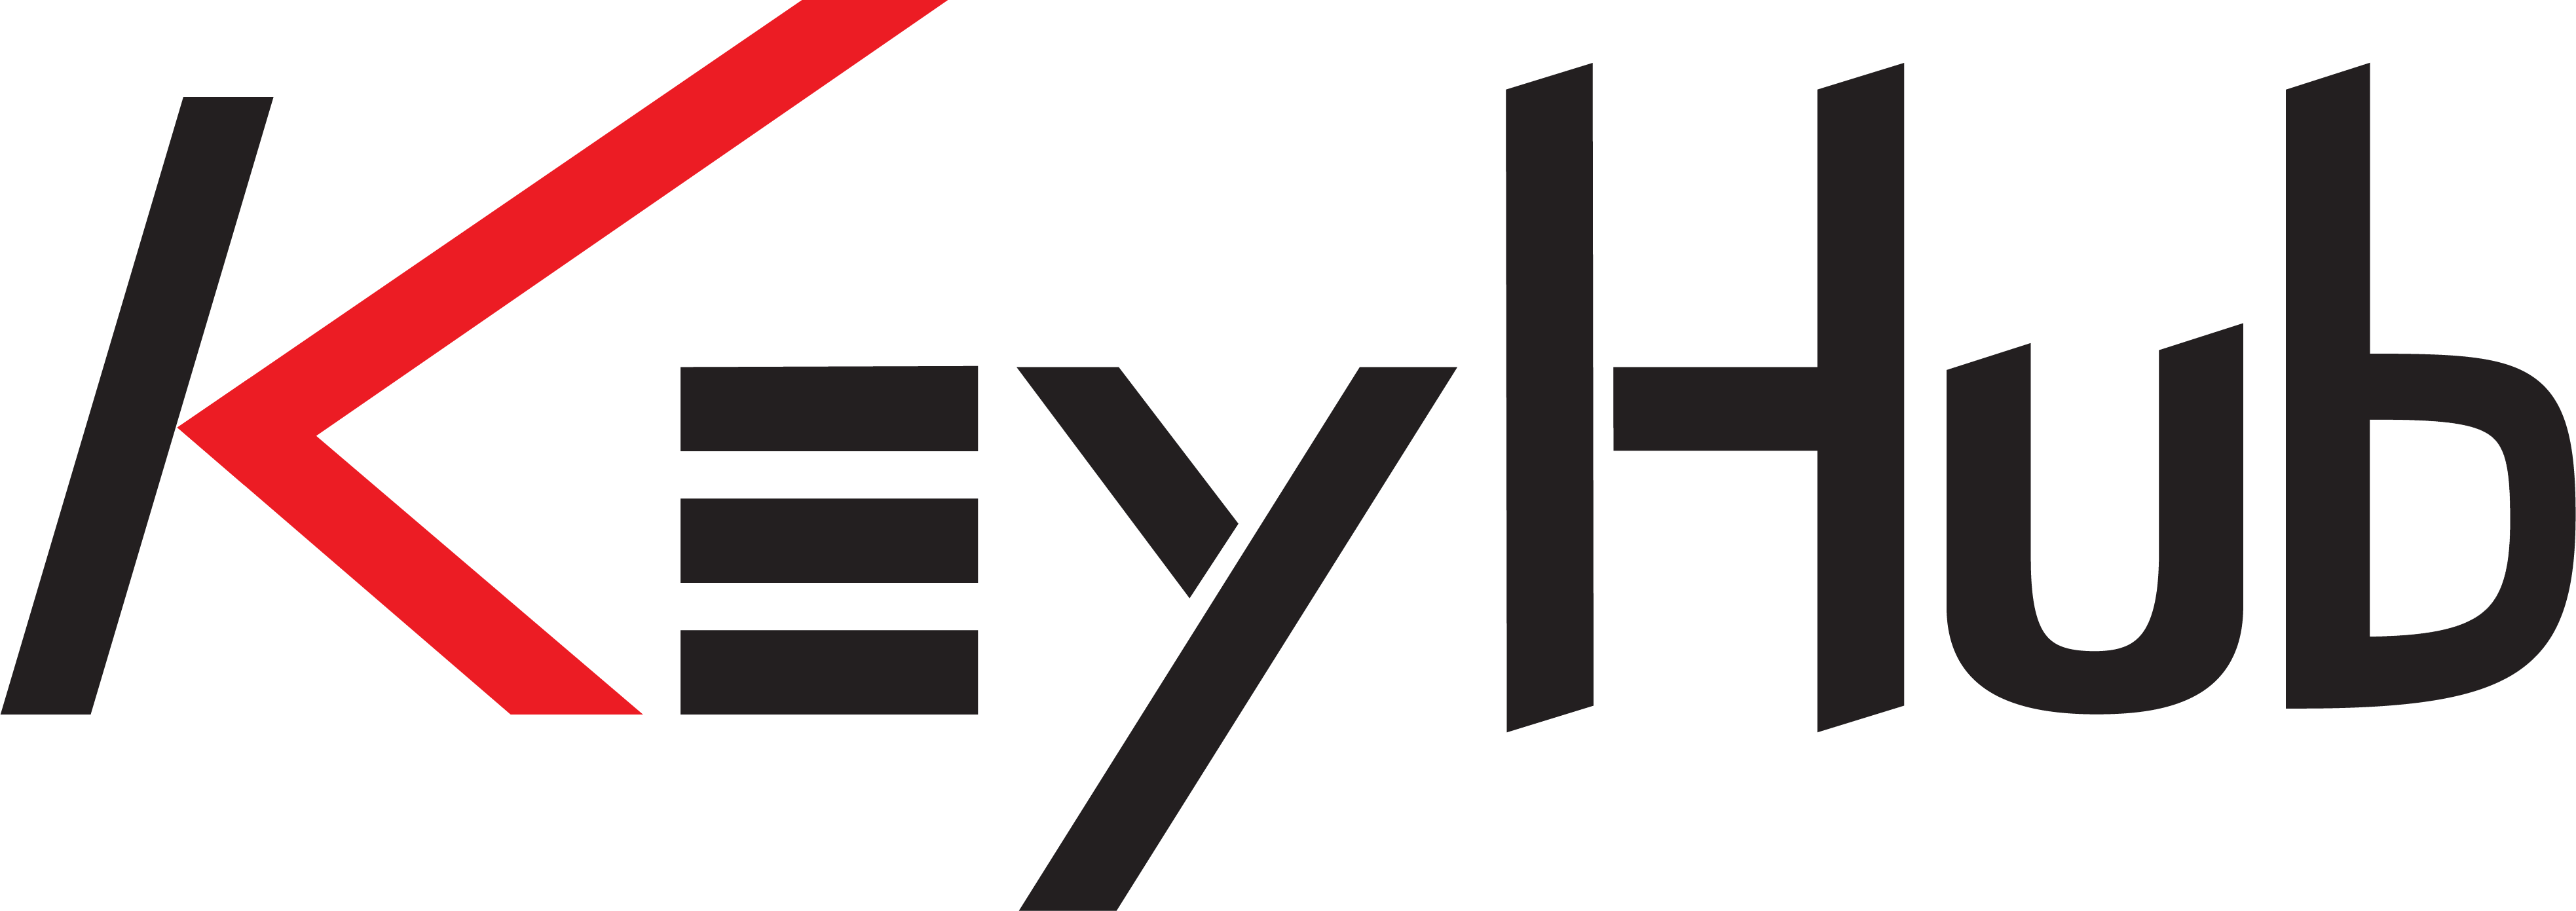 KeyHub Australia